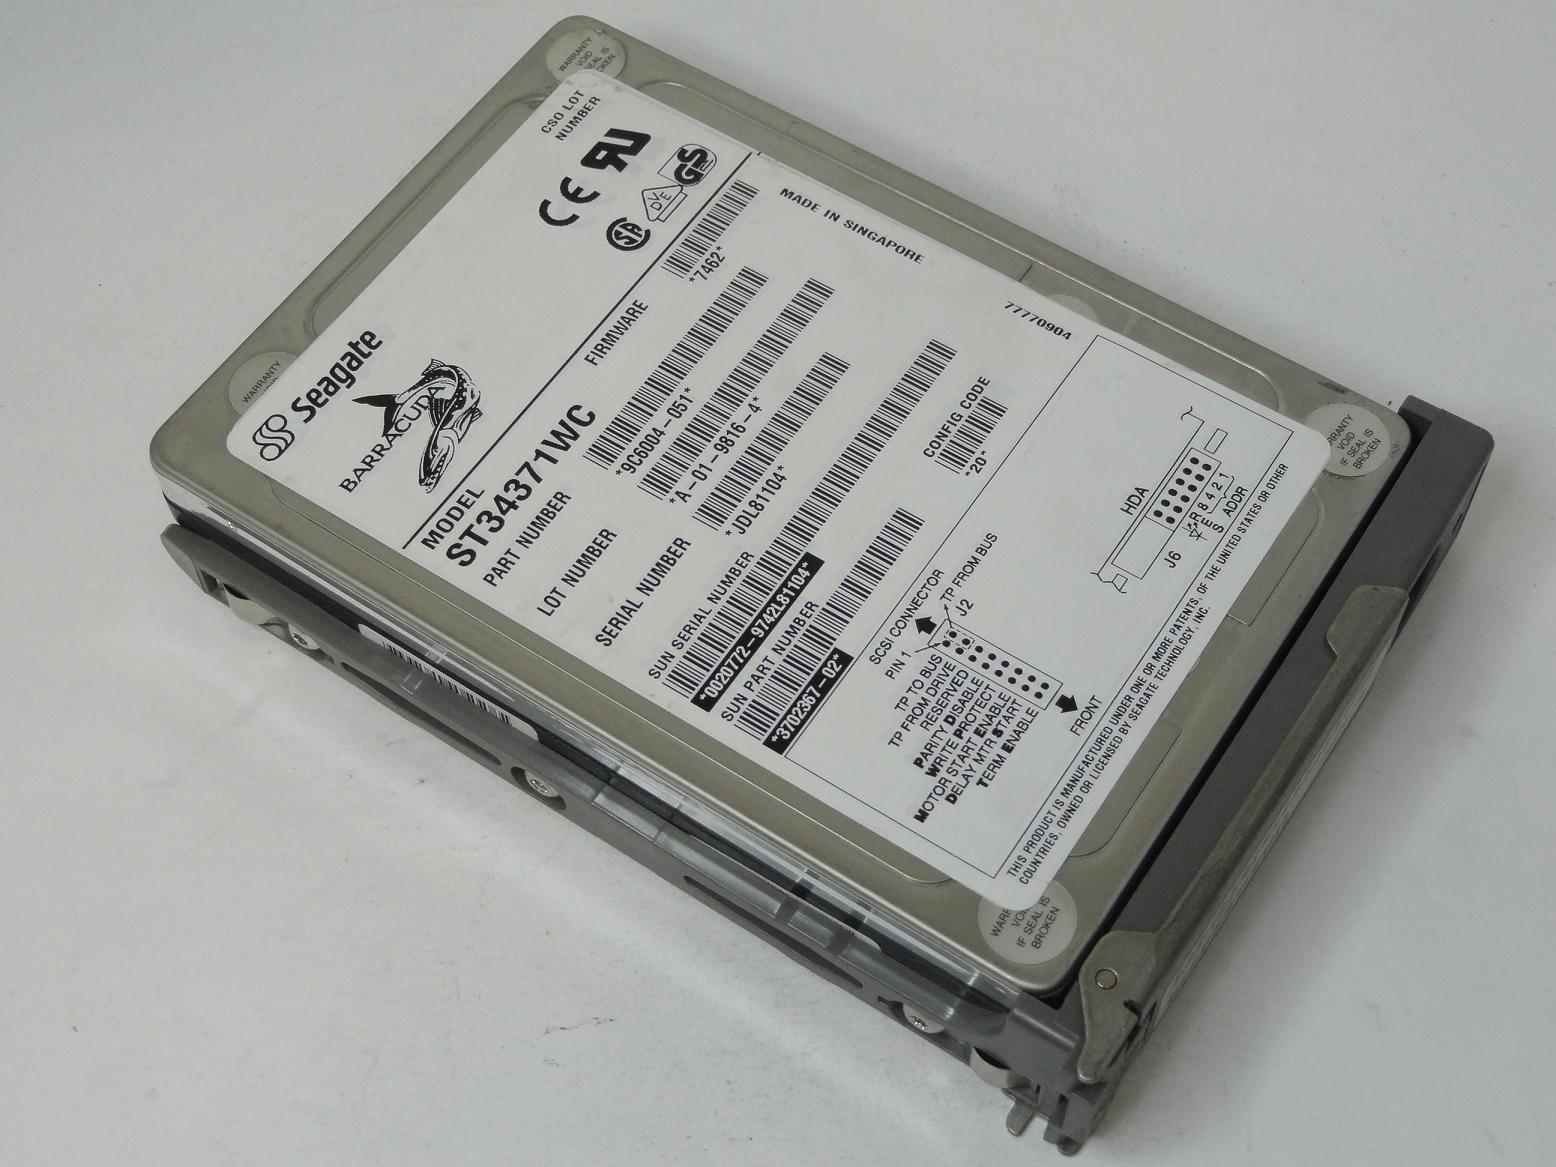 9C6004-051 - Seagate Sun 4.3GB SCSI 80 Pin 7200rpm 3.5in Barracuda HDD in Caddy - USED